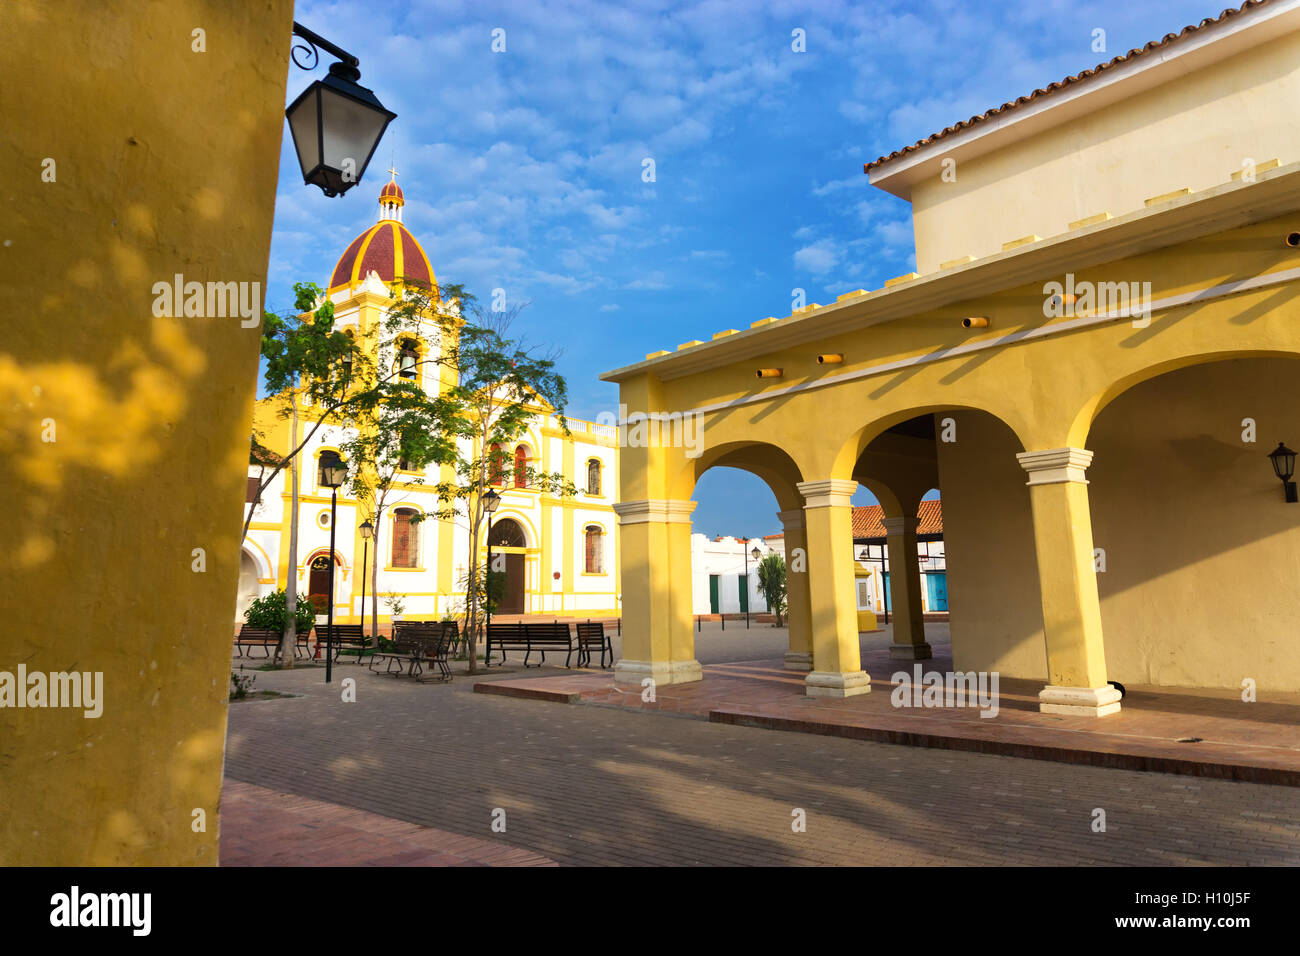 Vista di un bel colore giallo architettura coloniale in Mompox, Colombia Foto Stock